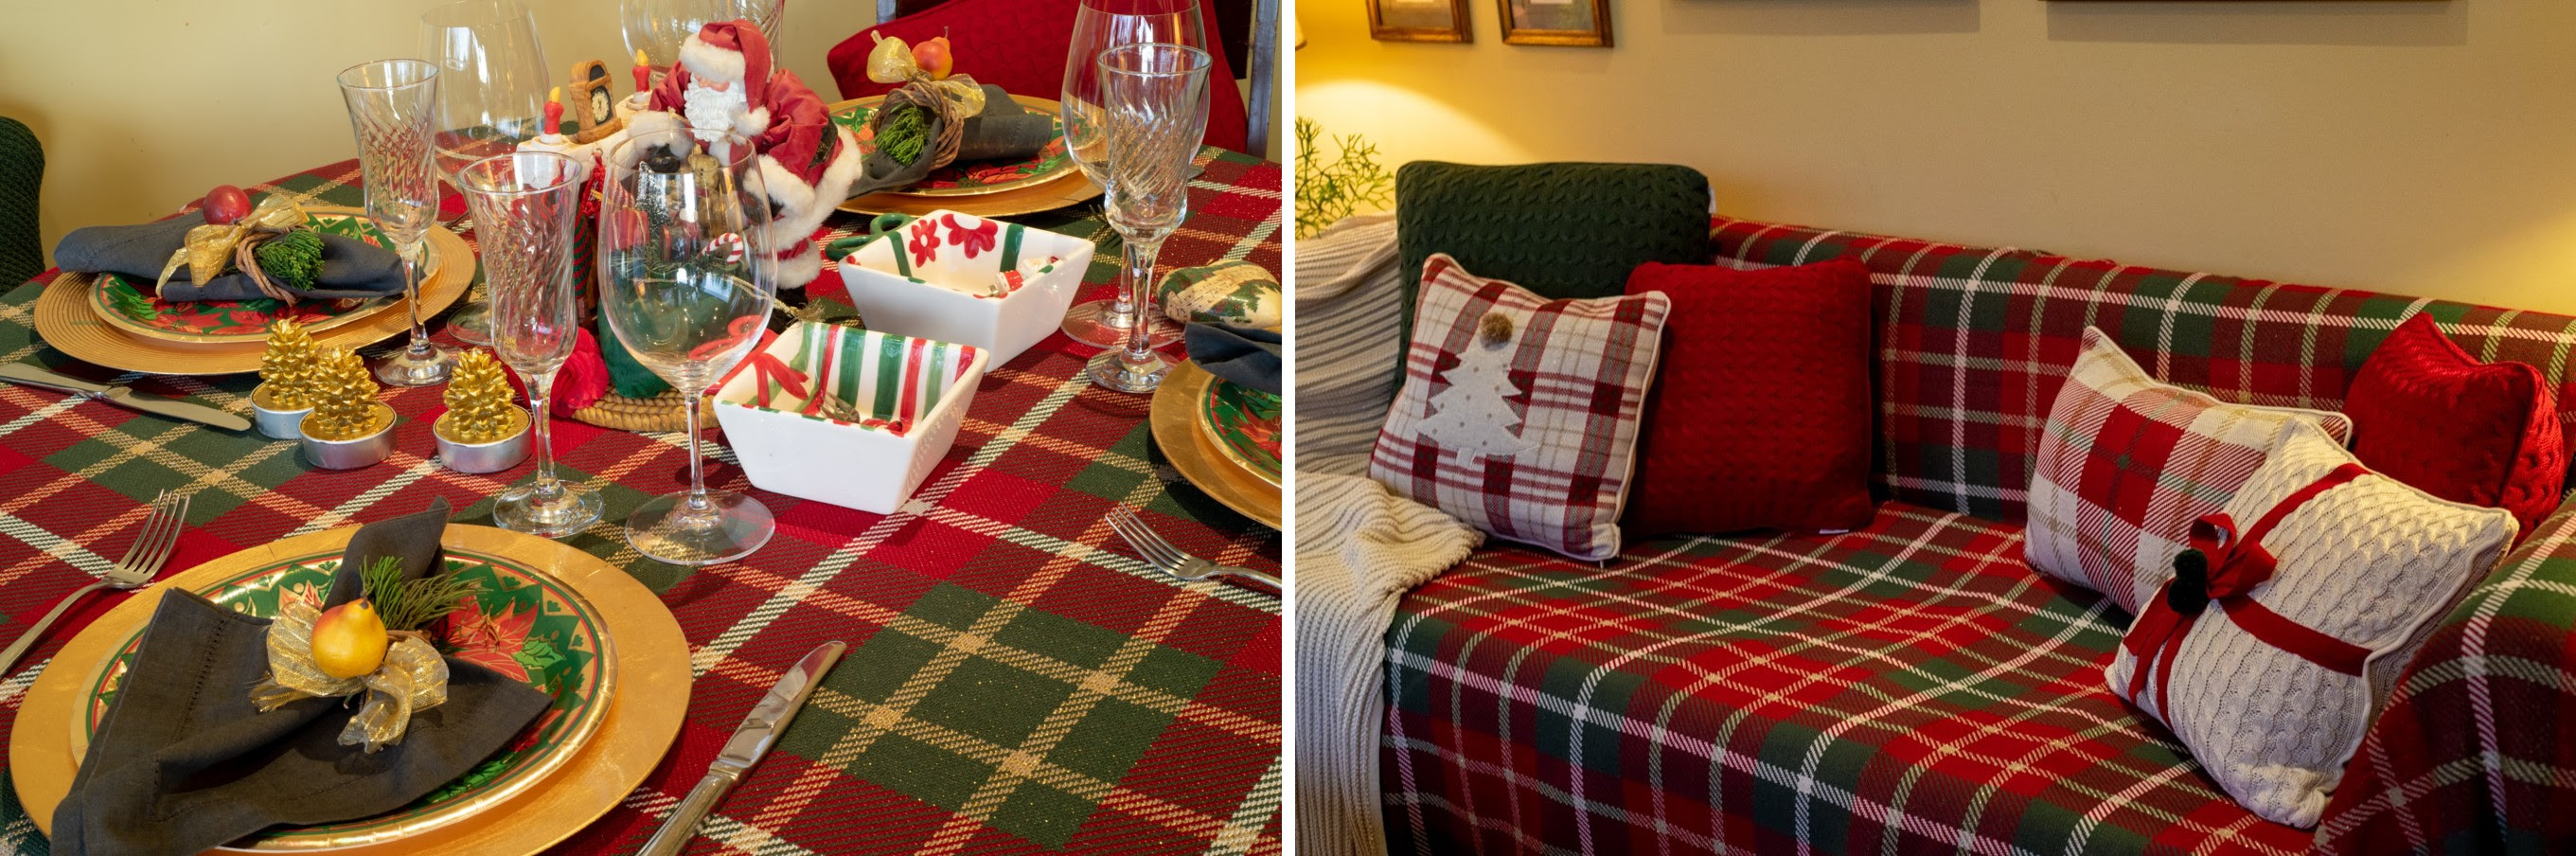 Toalha de mesa, capas para almofadas e mantas para sofá da Decortrico são sugestões para deixar a casa toda em clima de Natal / Divulgação